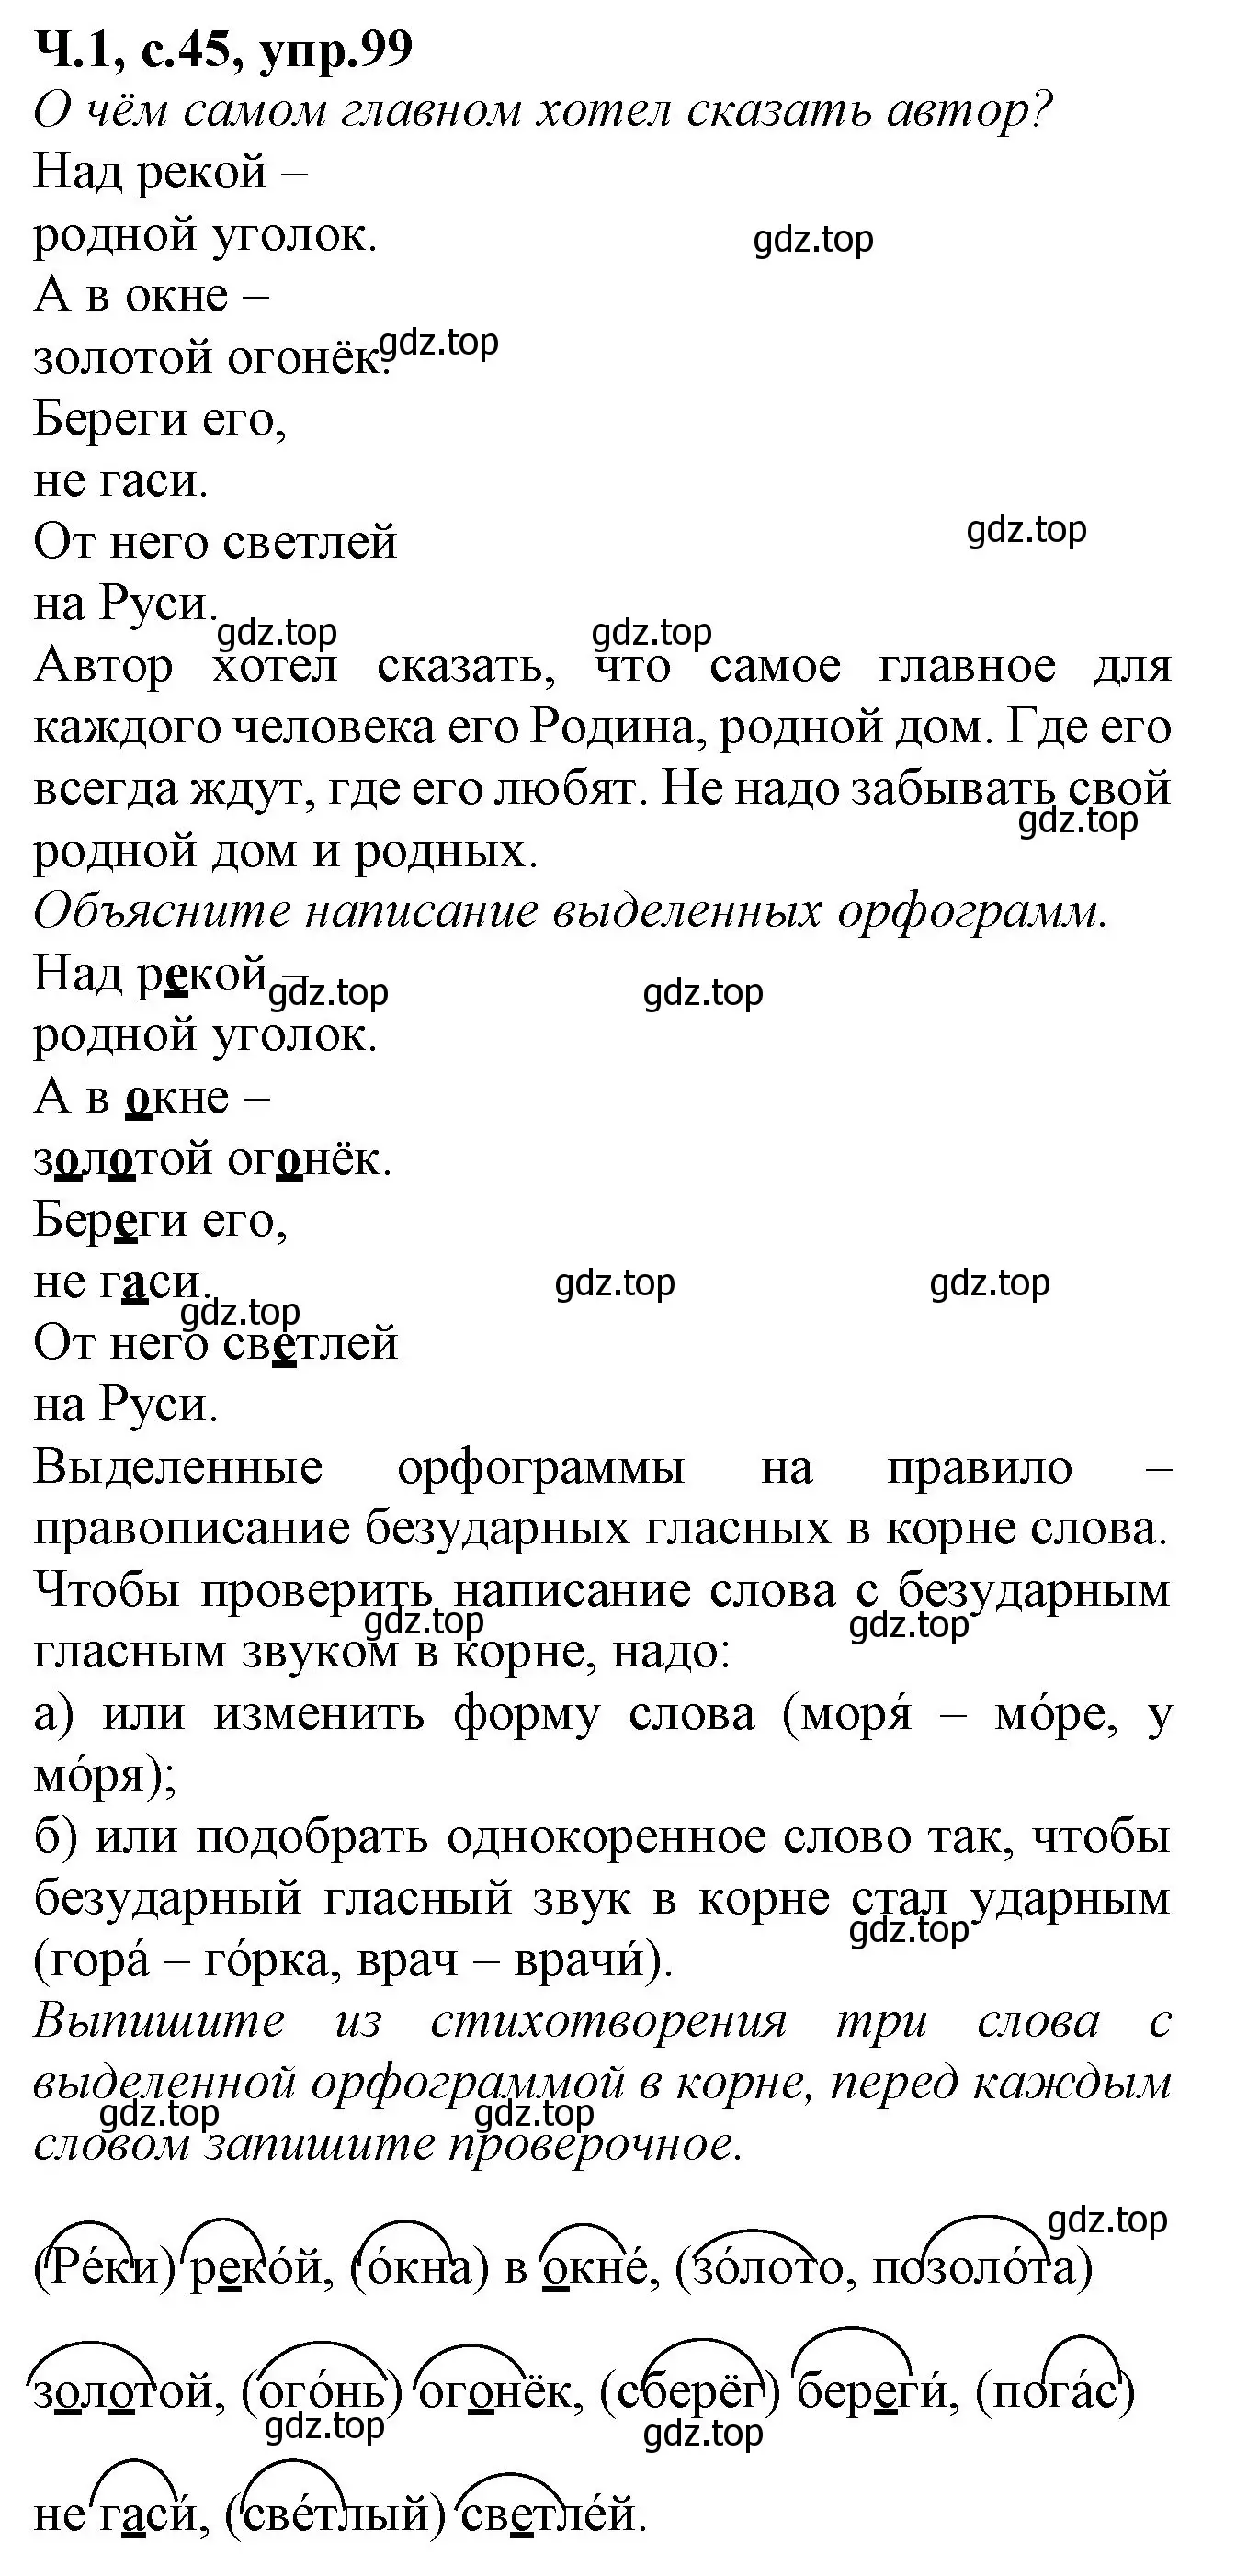 Решение номер 99 (страница 45) гдз по русскому языку 2 класс Канакина, рабочая тетрадь 1 часть